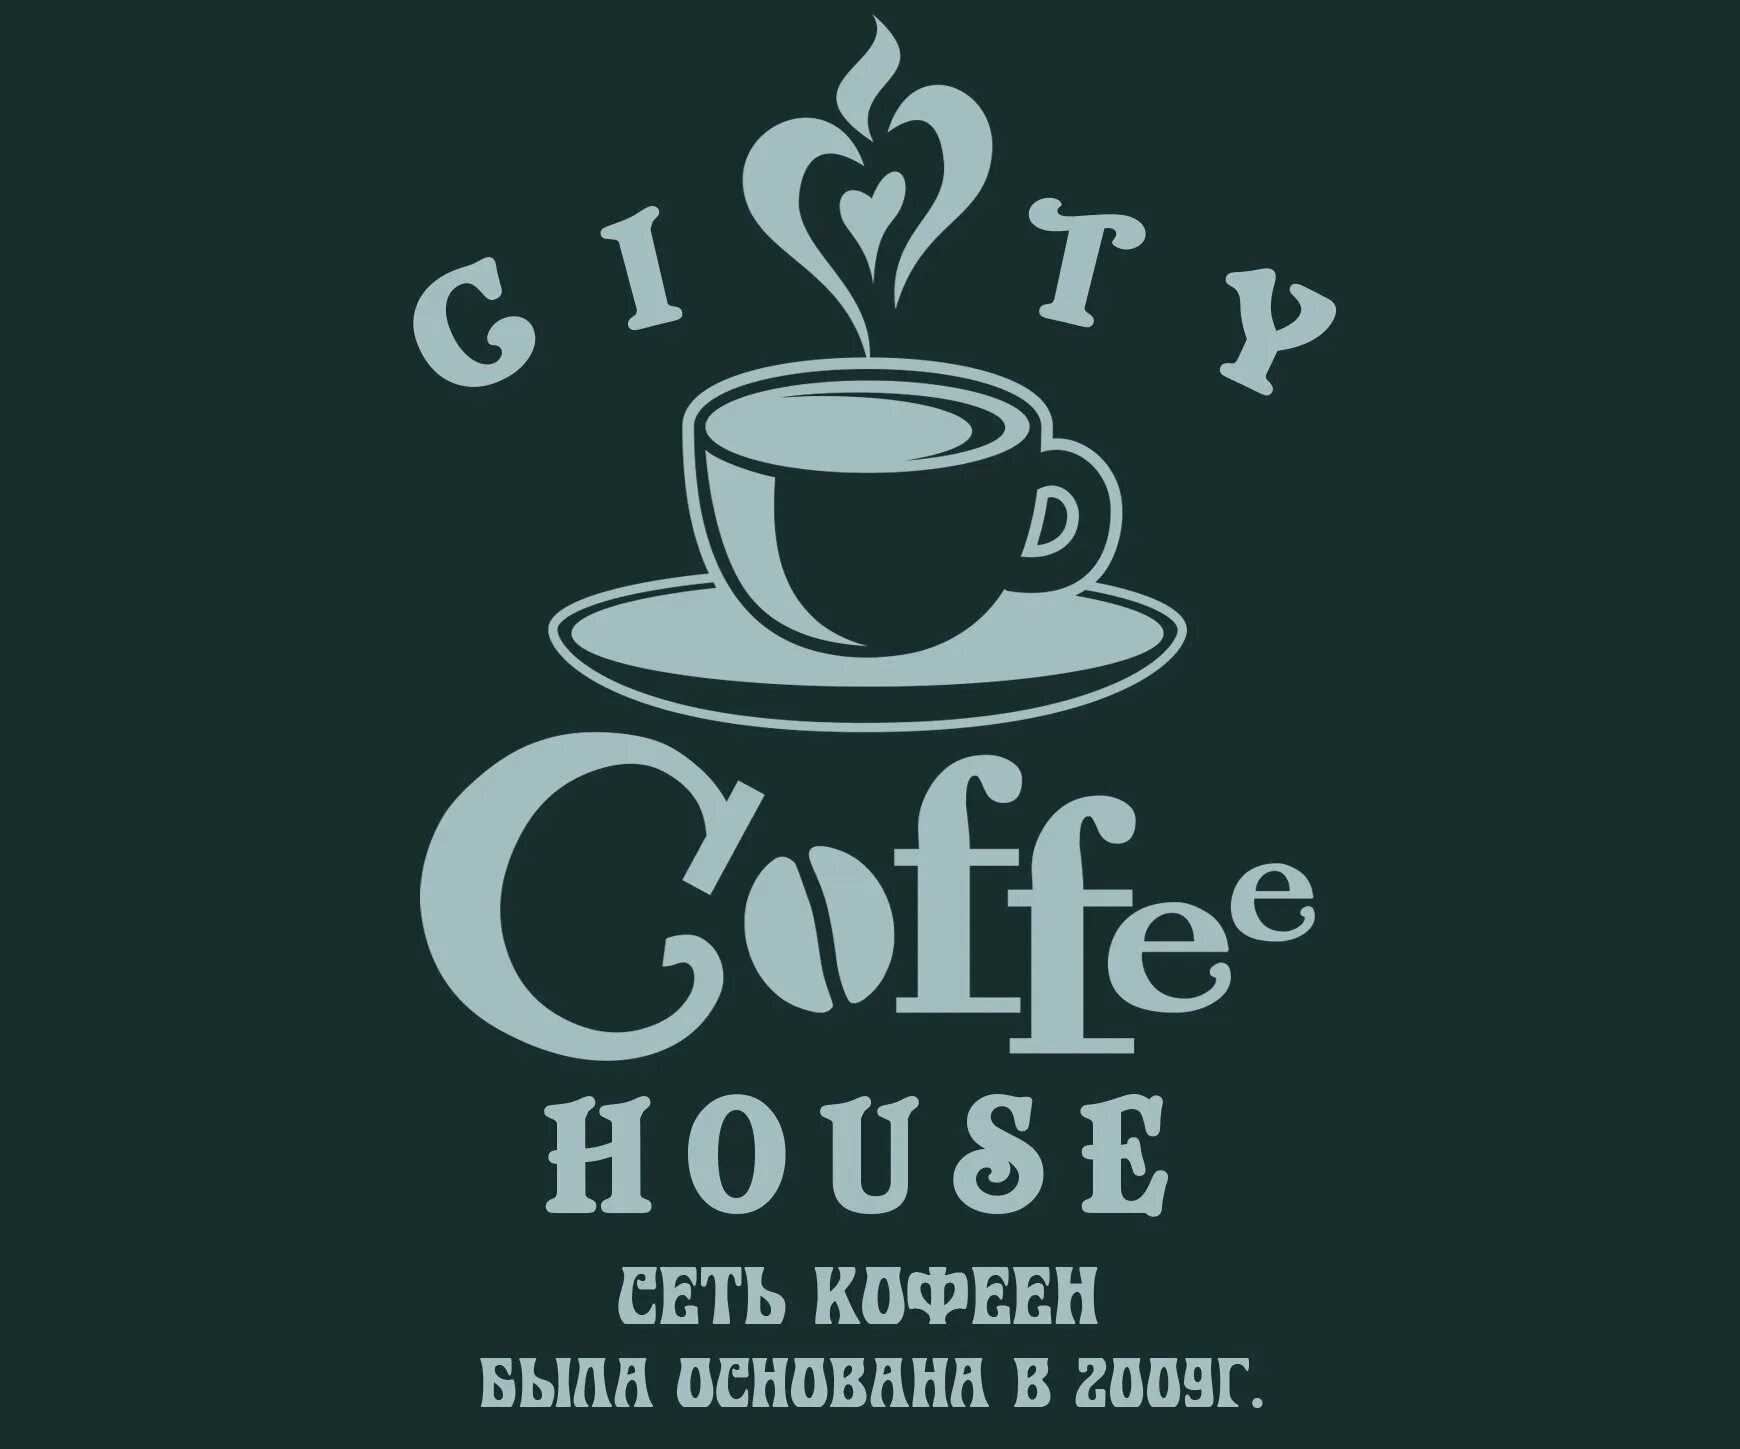 Кофе есть кофейня. Логотип кофейни. Реклама кофейни. Слоган для кофейни. Атрибуты кофейни.